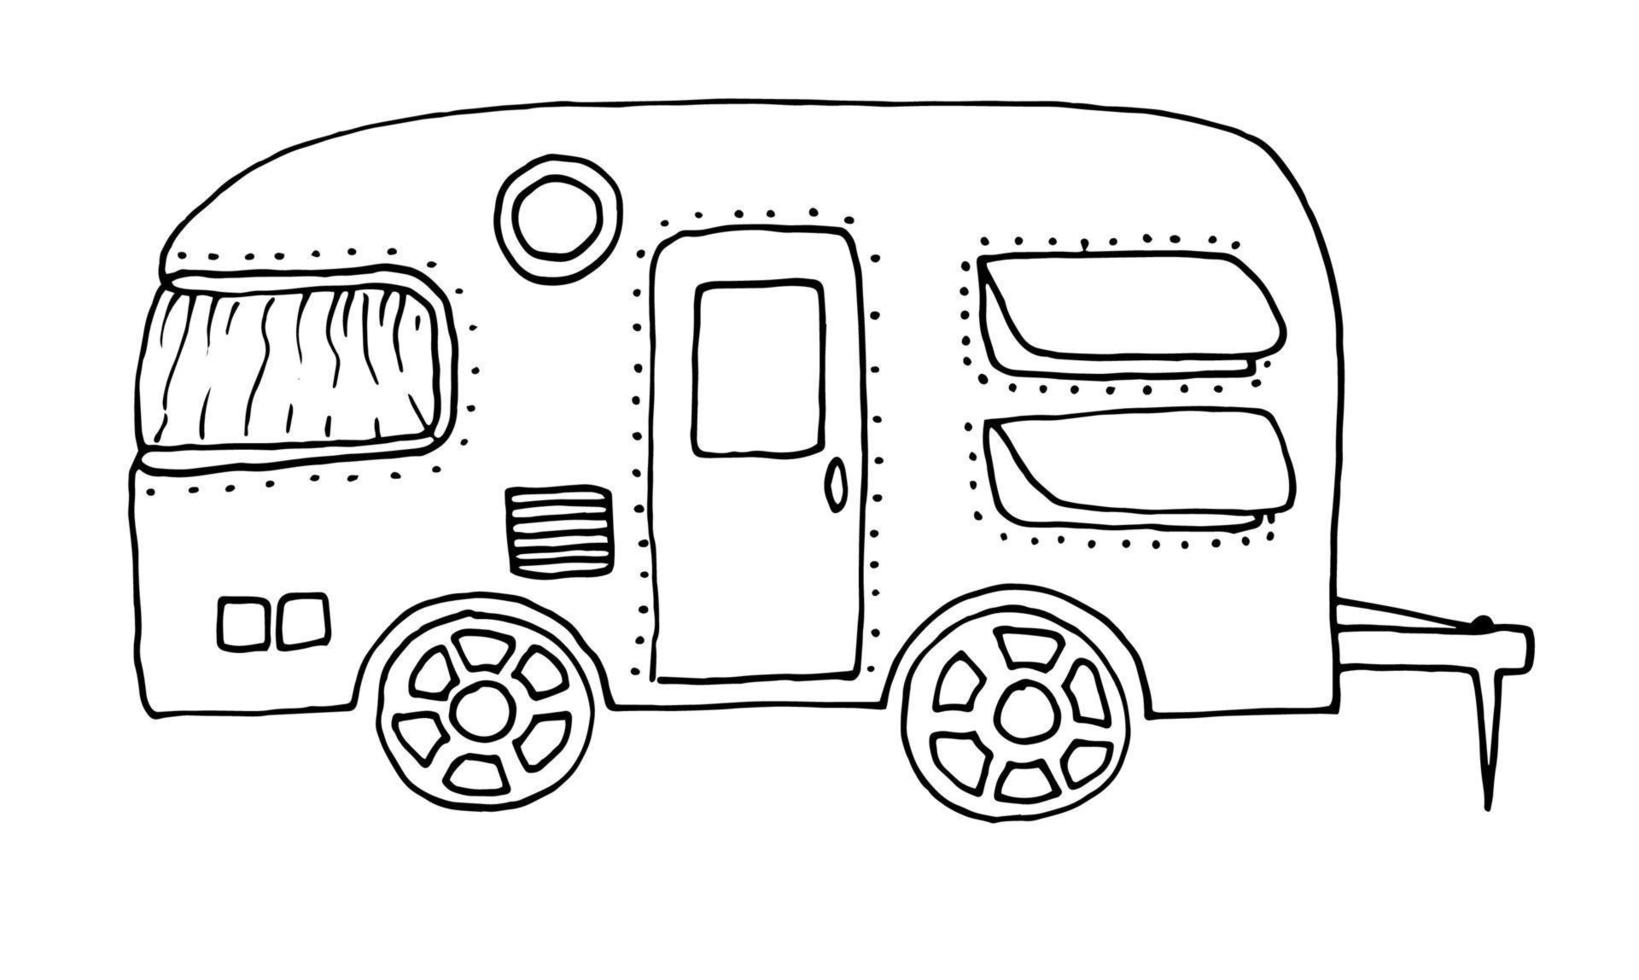 Camper, recreational vehicle, vehicles, camper, vans, caravans. Vector illustration hand-drawn in outline style doodle